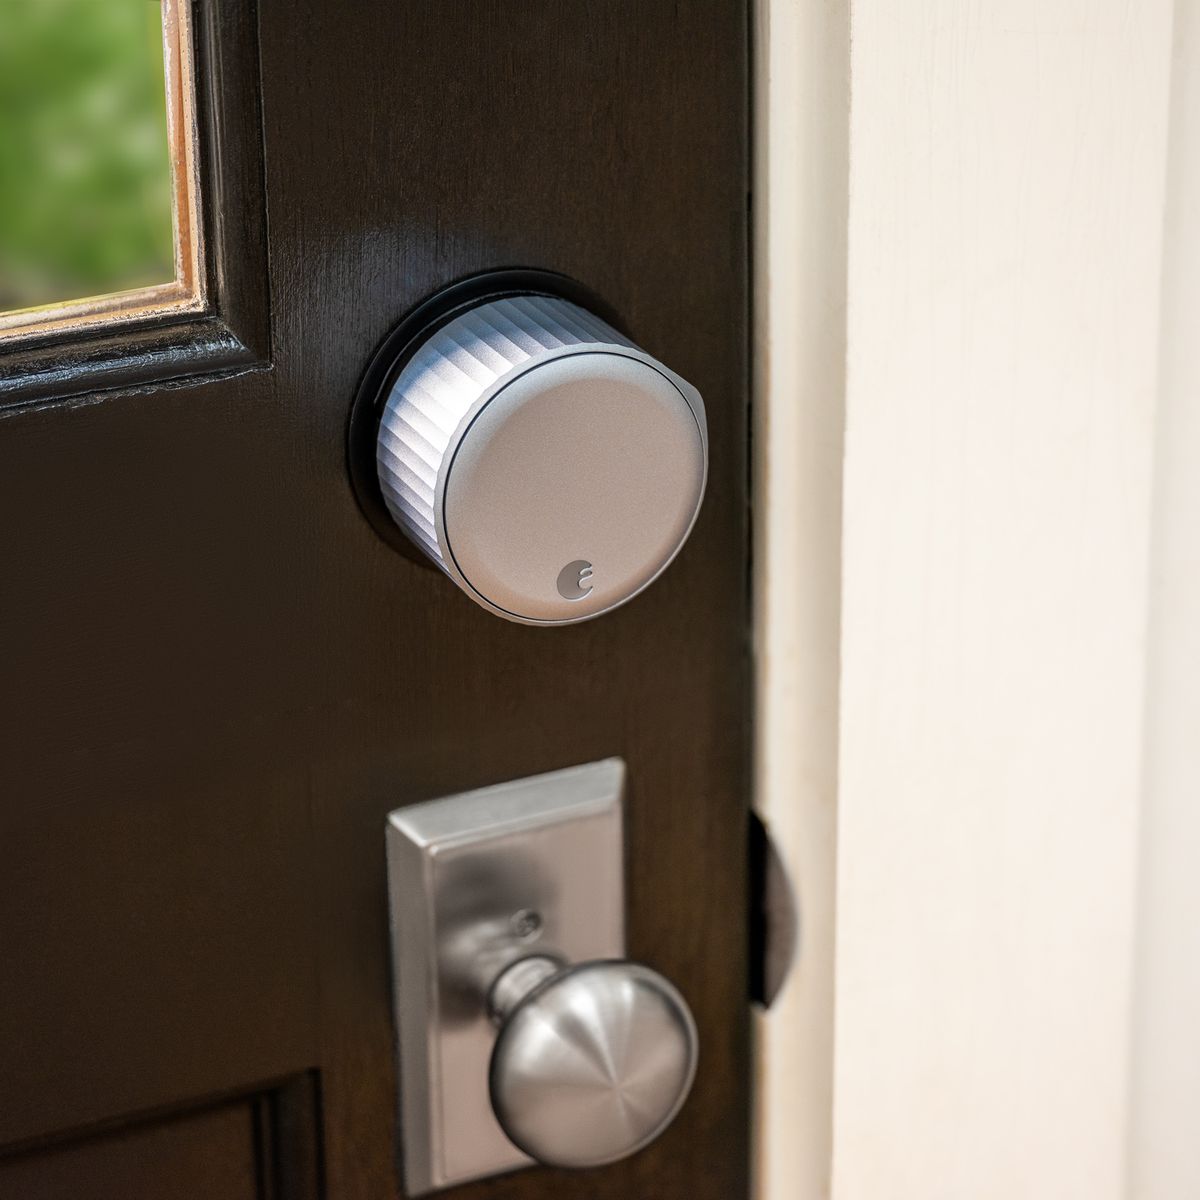 August Wi-Fi Smart Lock instalado en una puerta marrón